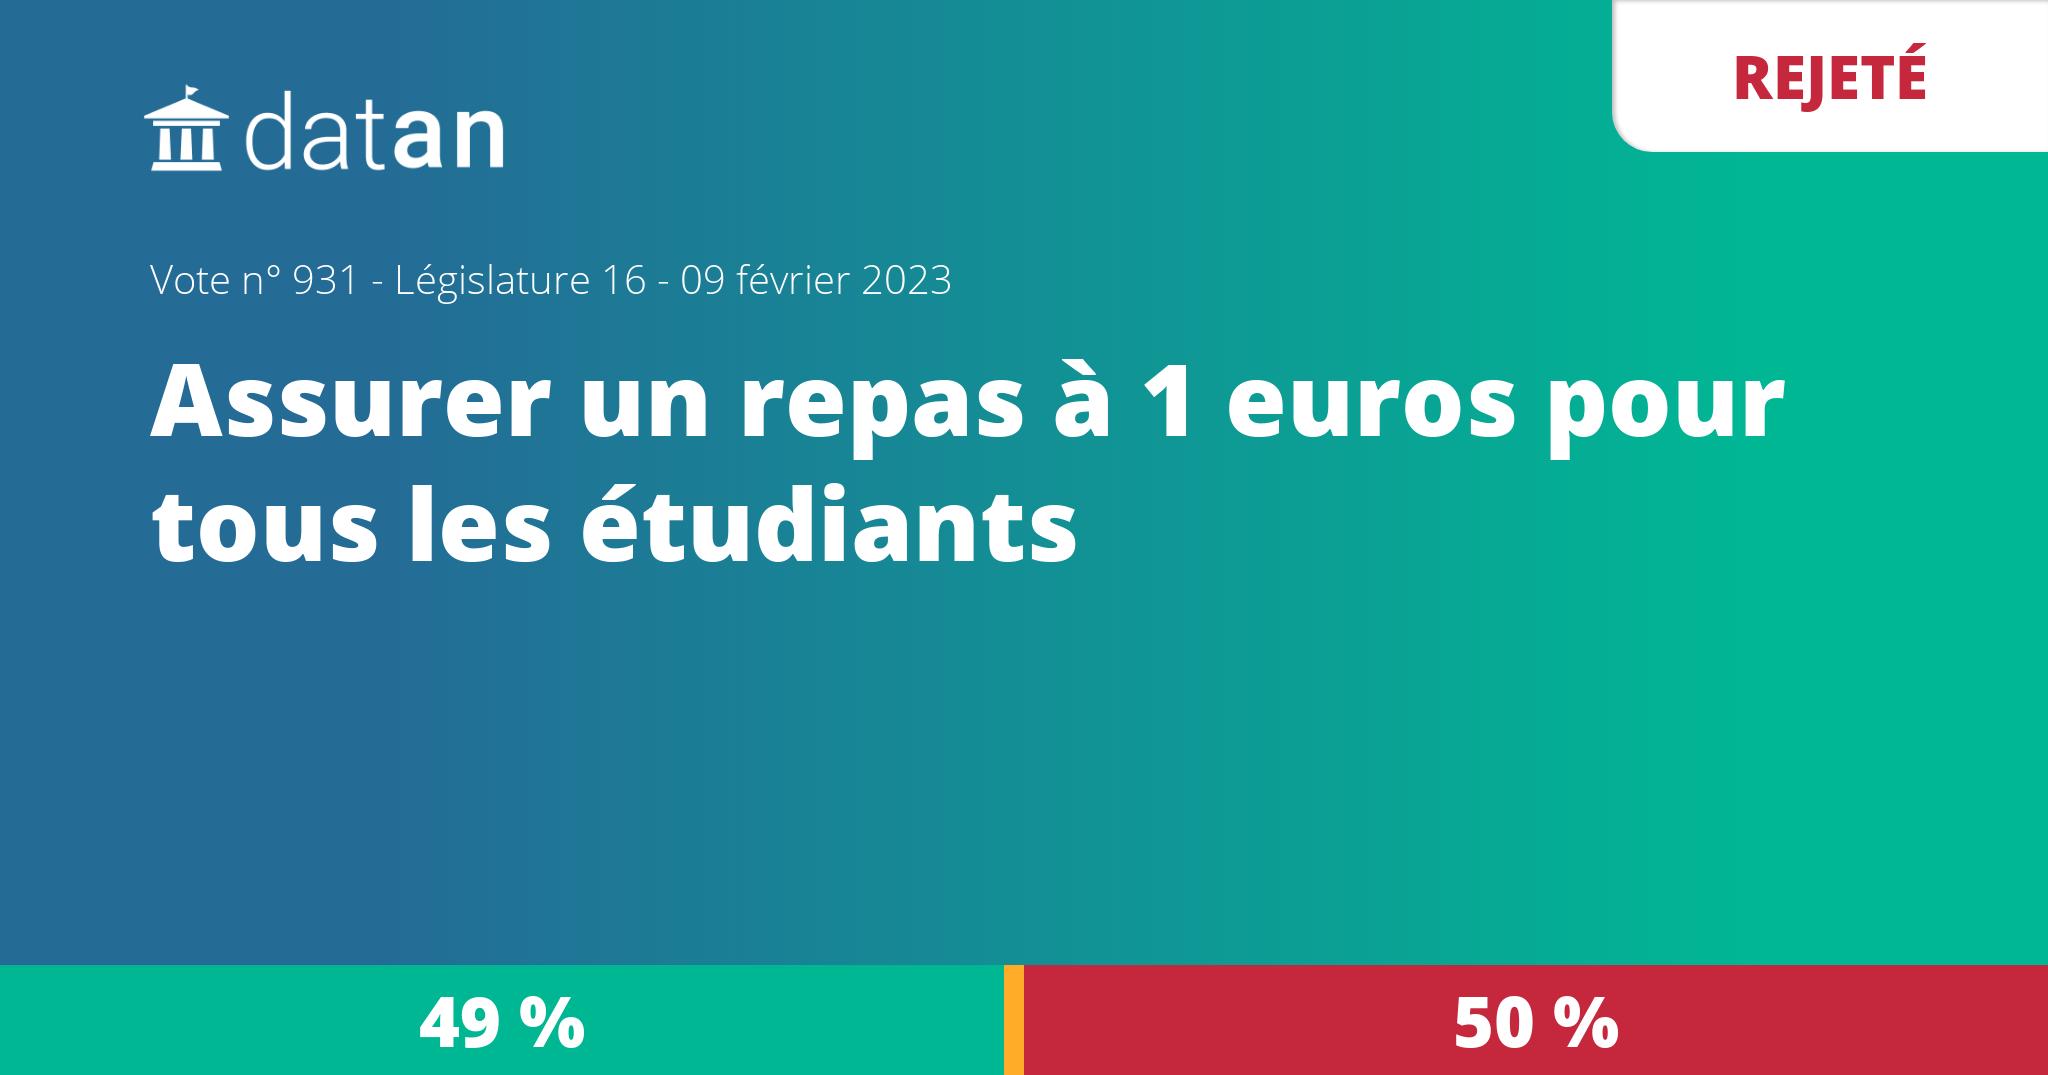 Vote n°931 - Vote final - Assurer un repas à 1 euro pour tous les étudiants  - 16e législature